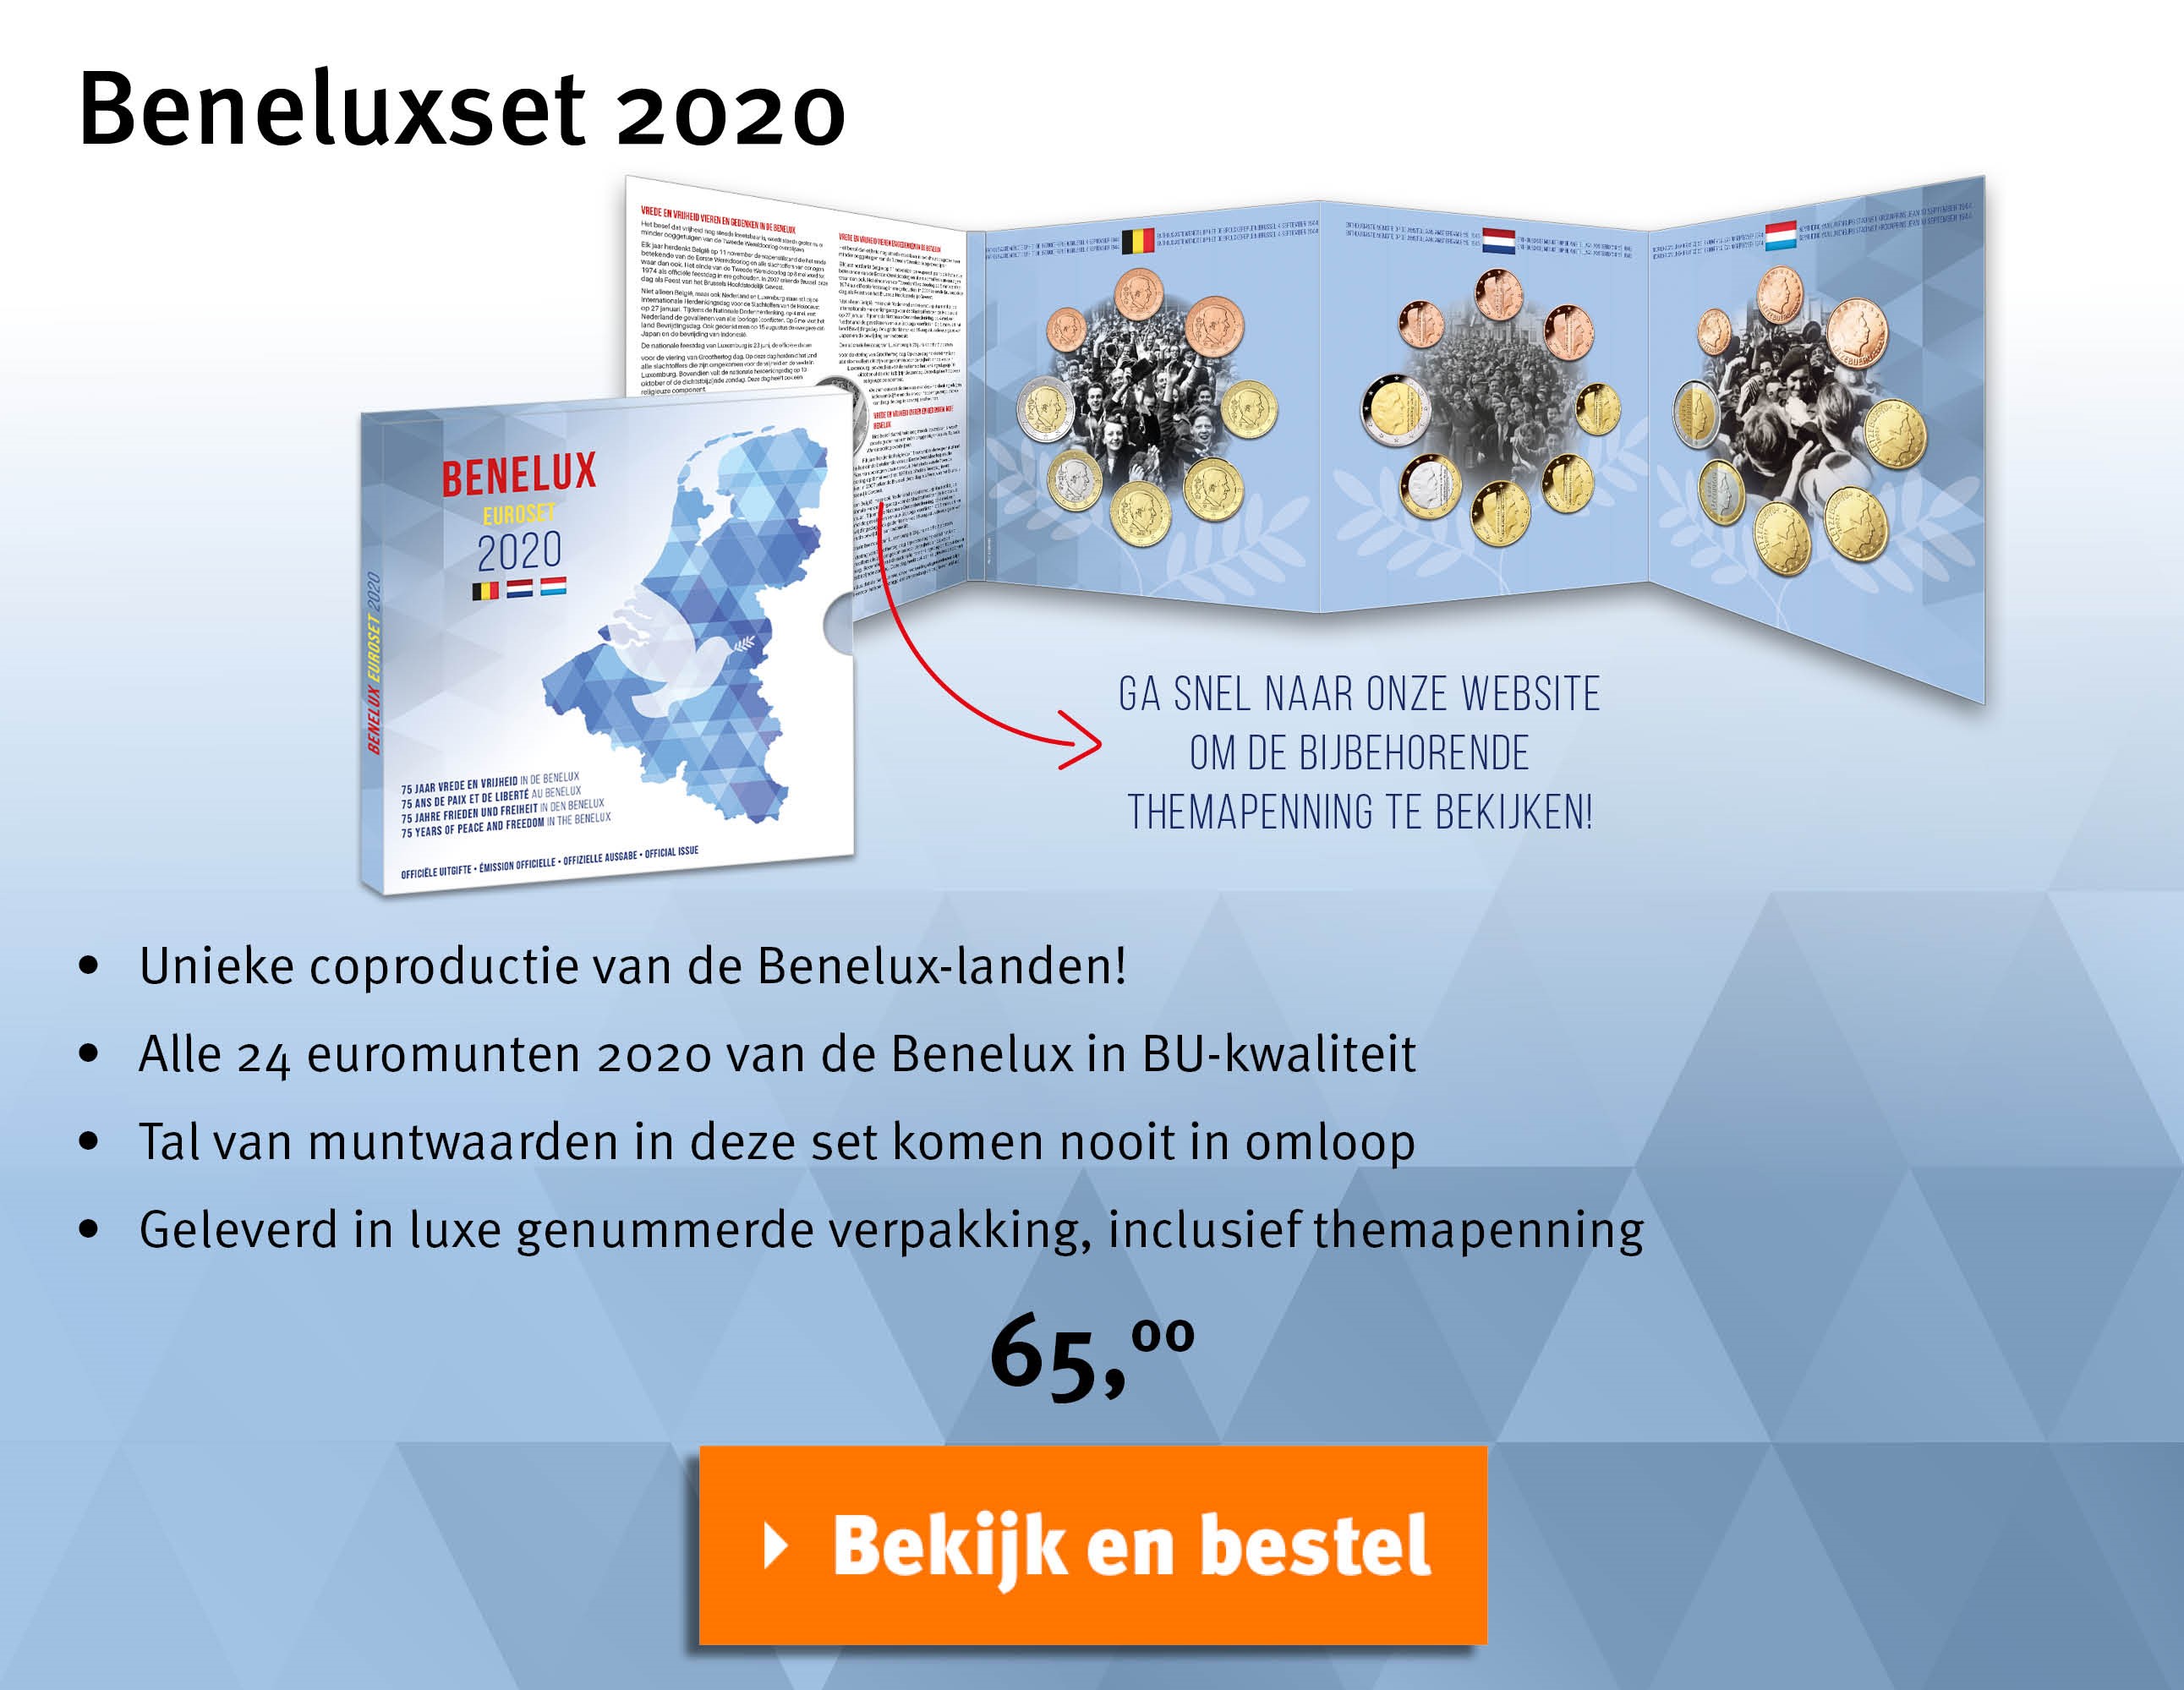 Bekijk en bestel: Beneluxset 2020